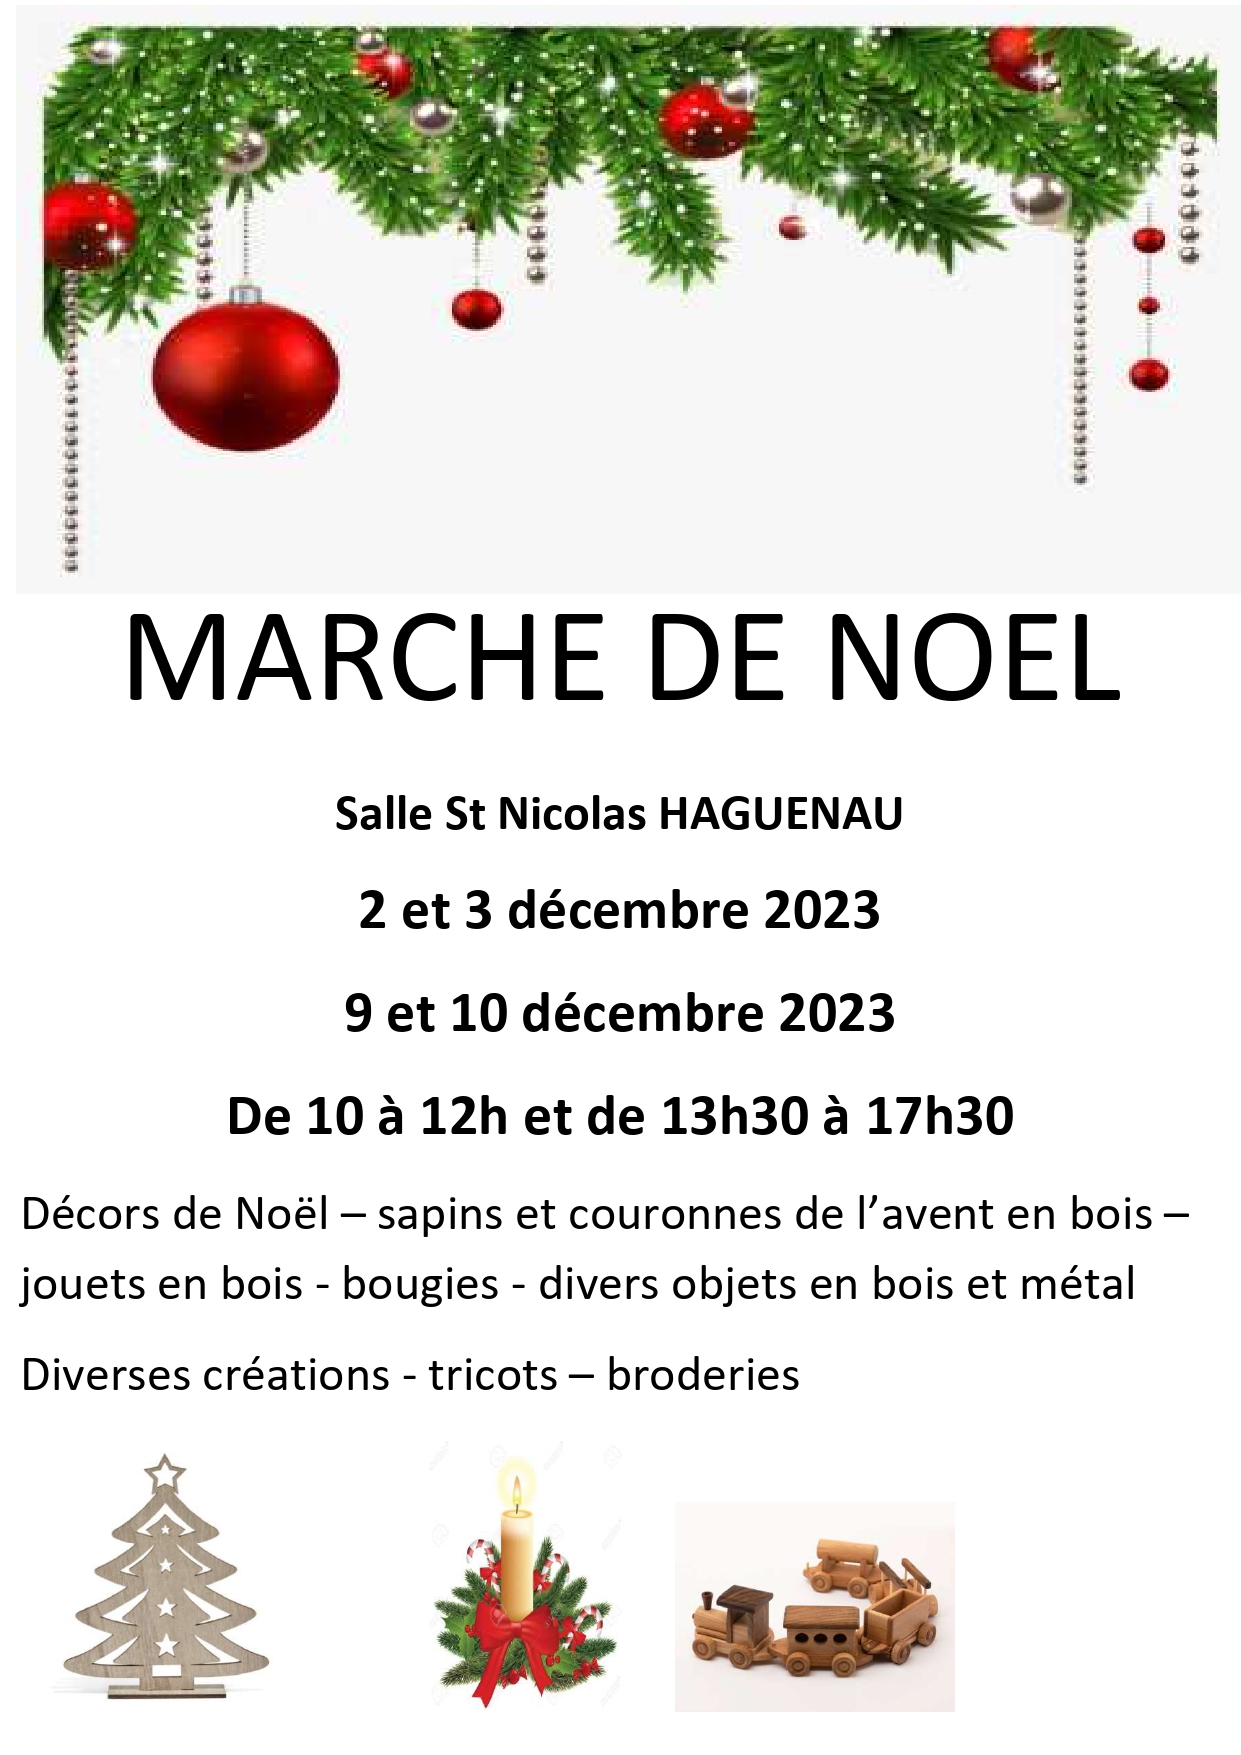 Marché de Noël - Foyer St Nicolas